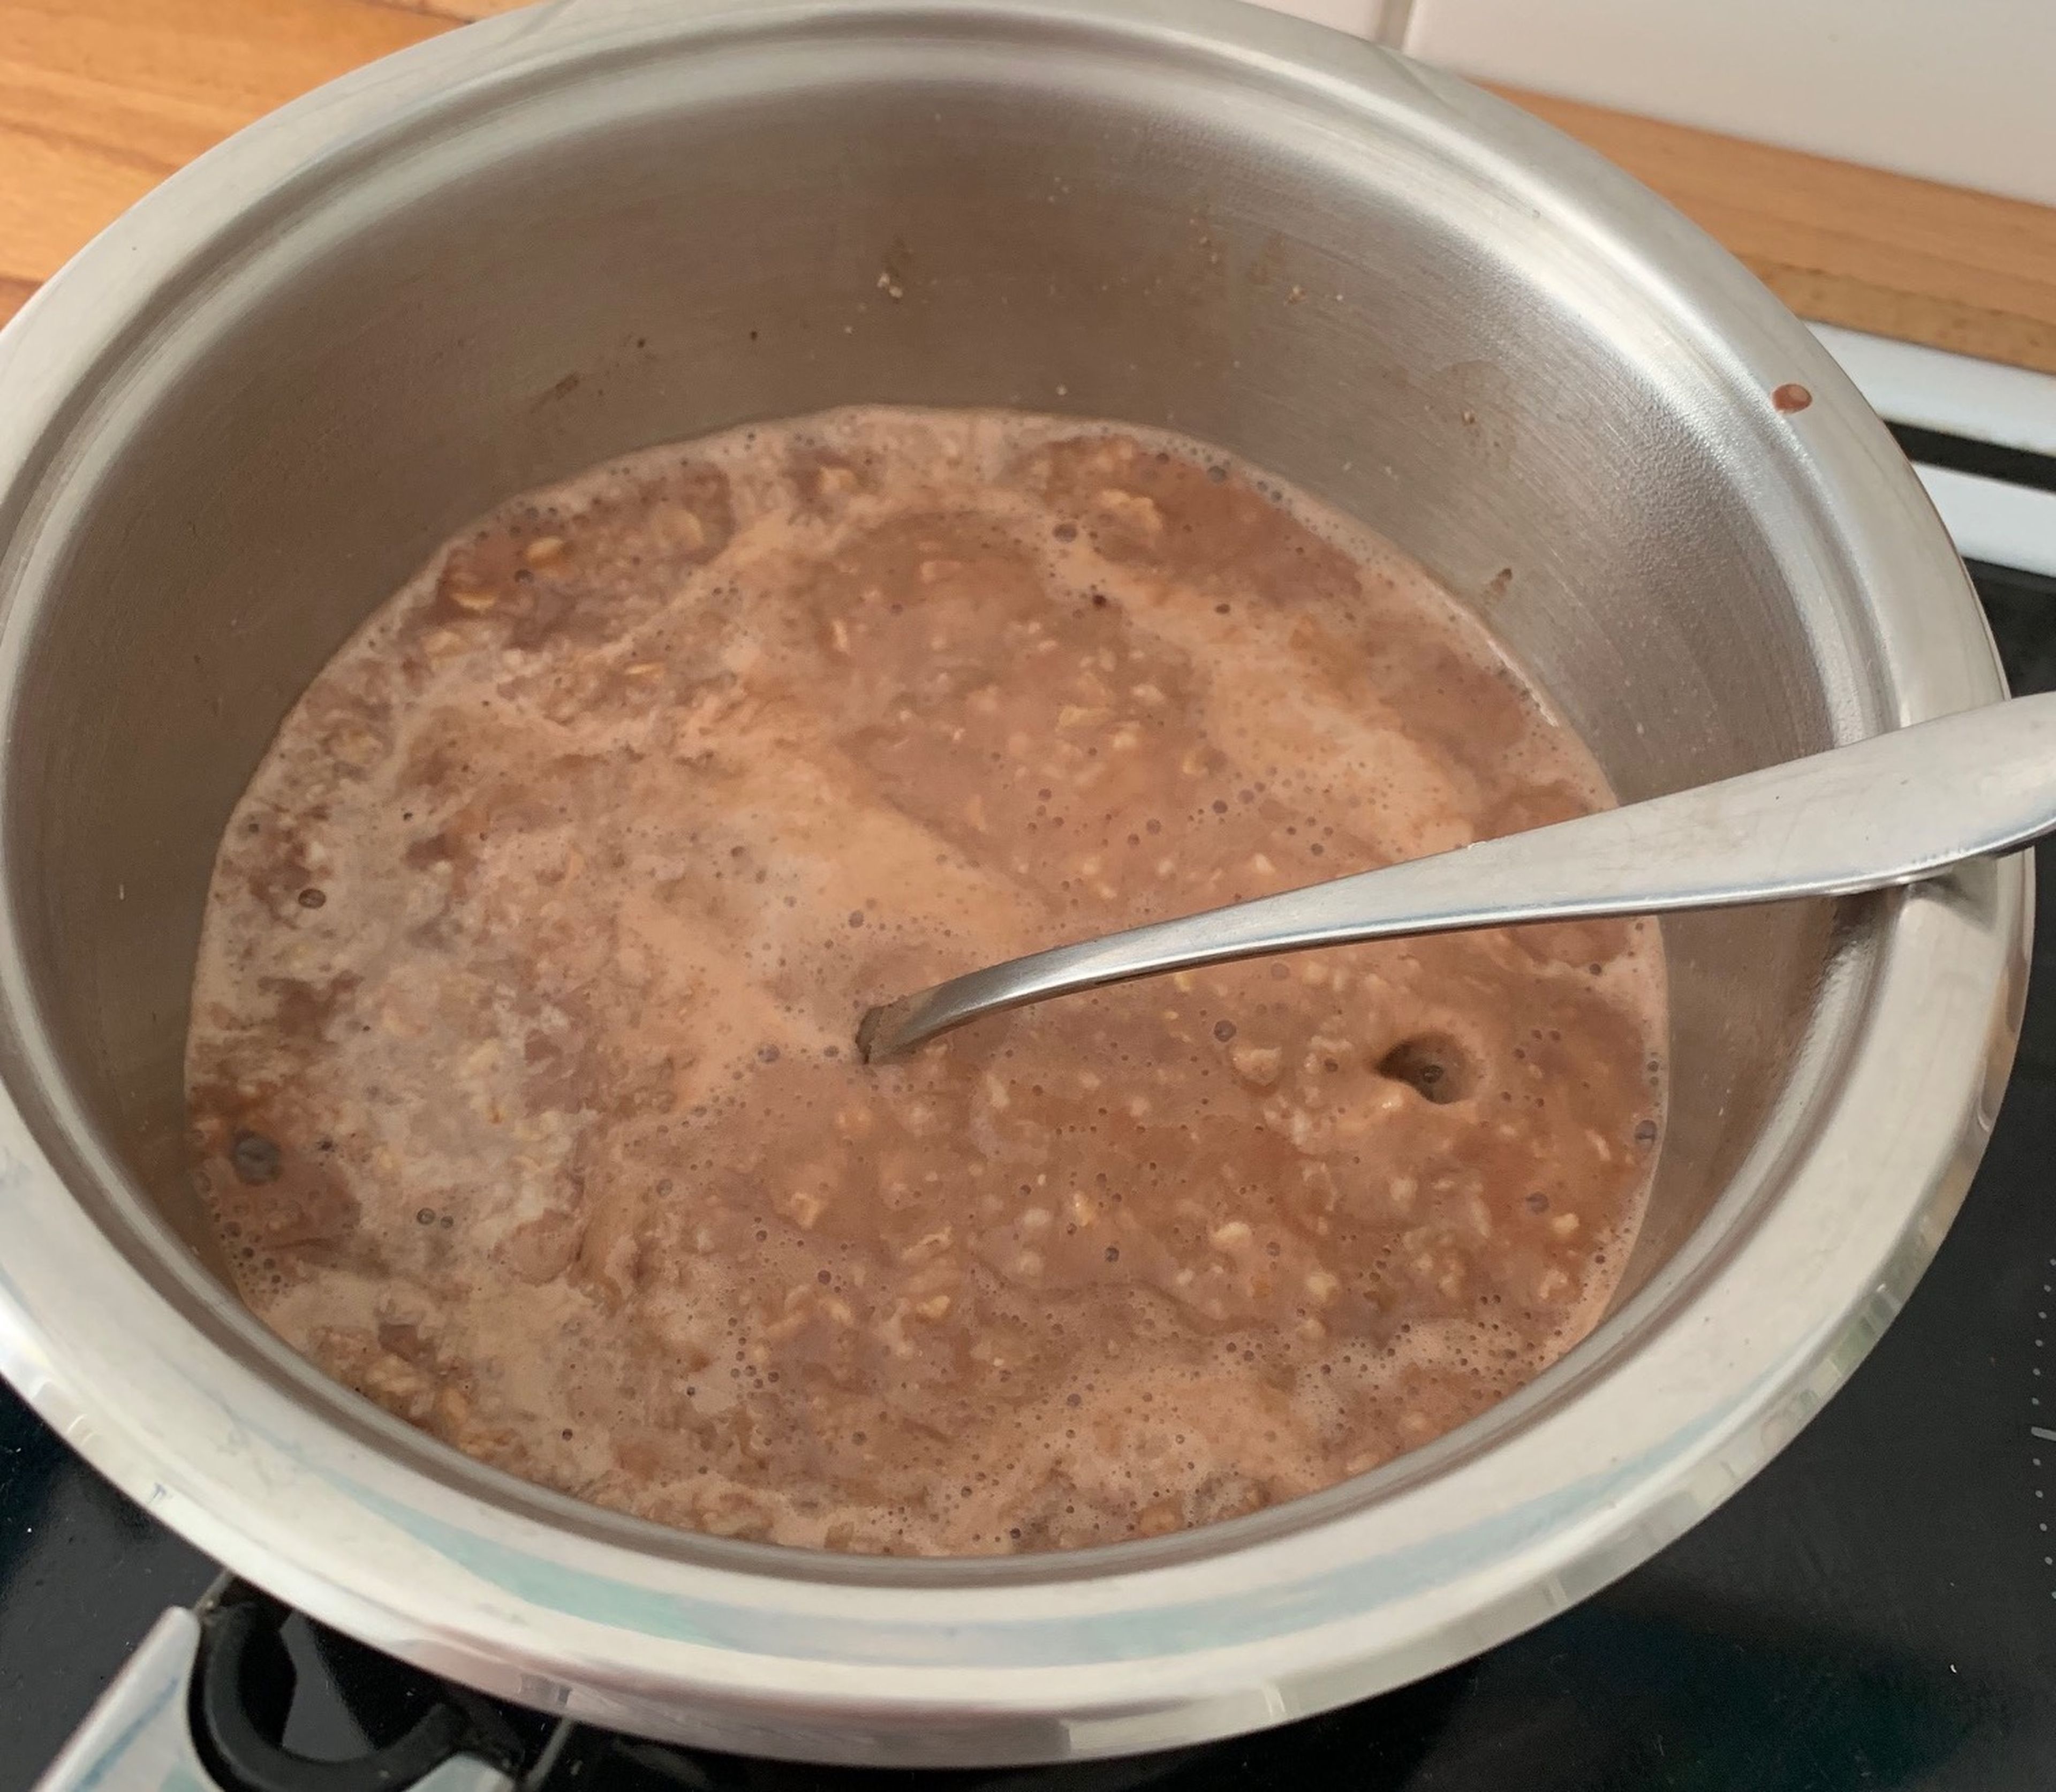 Für den Schoko-Porridge Haferflocken, Milch und Wasser in den Kochtopf geben. Bei mittlerer Hitze und regelmäßigem Umrühren aufkochen lassen (3 Min). Herd ausschalten und Porridge bei Restwärme weiterköcheln lassen. Raw Kakao unterrühren und 5 Min. ruhen lassen.